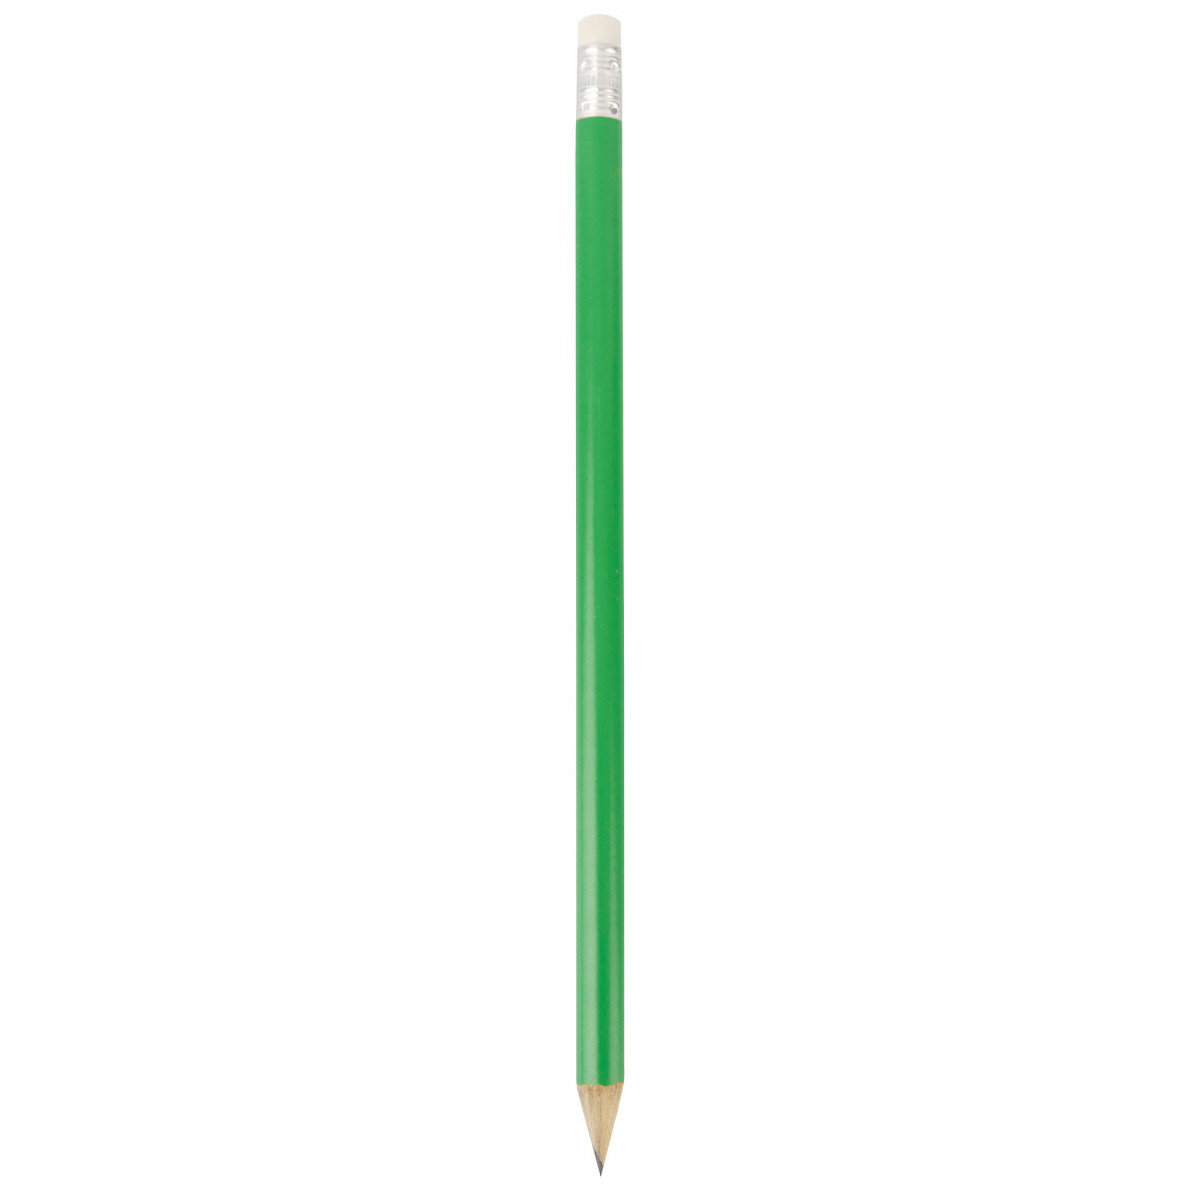 Crayon en bois vert avec gomme